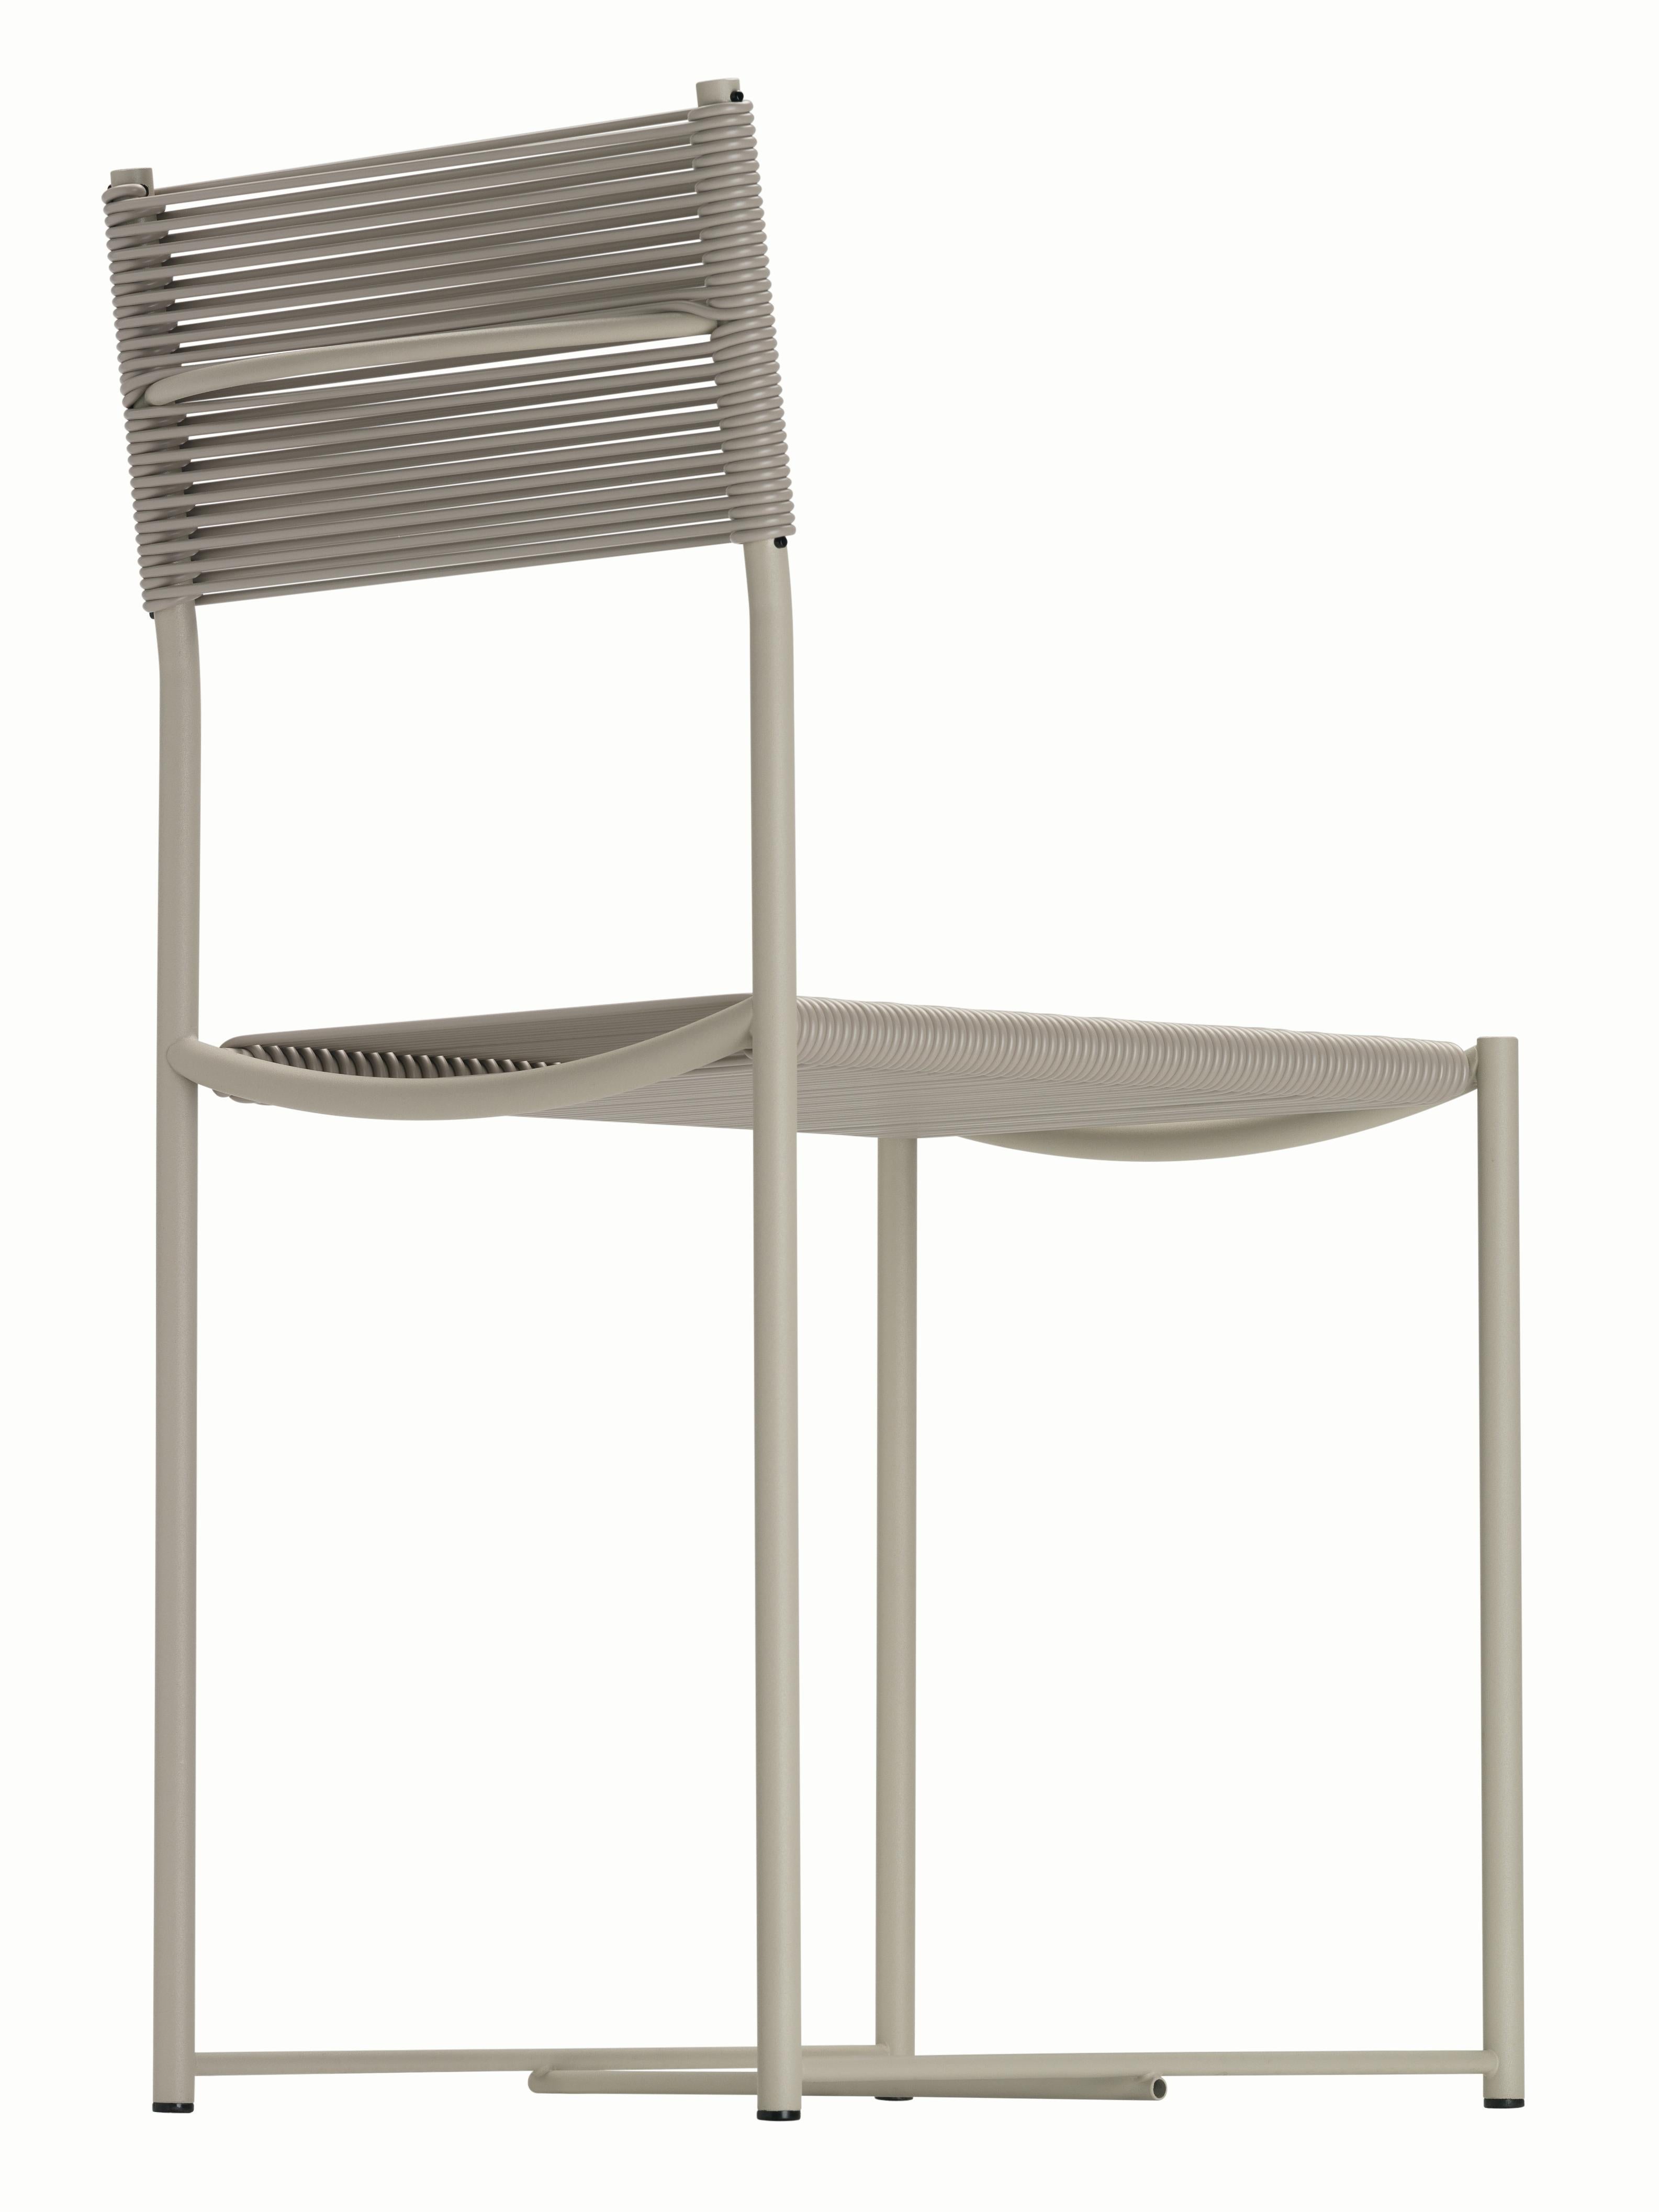 Alias 101 Spaghetti Chair mit beigefarbenem PVC-Sitz und sandfarben lackiertem Stahlgestell by Giandomenico Belotti

Stuhl mit Struktur aus verchromtem oder lackiertem Stahl, Sitz und Rückenlehne aus PVC.

(1922-2004) Nach seinem